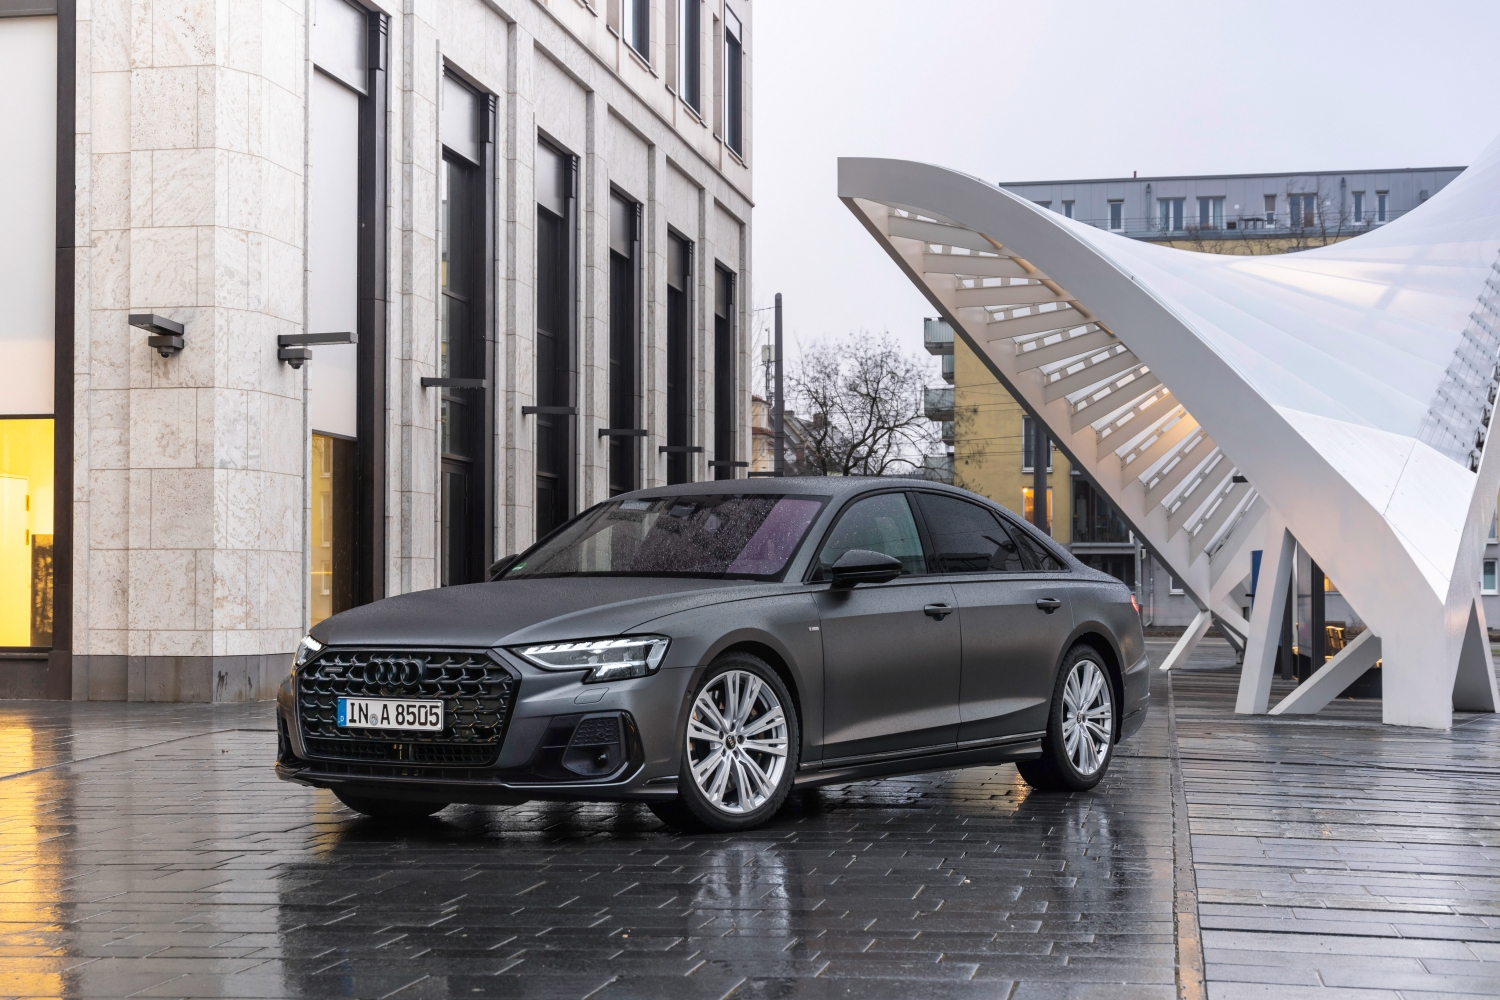 W drogich i luksusowych samochodach Audi pojawią się reklamy